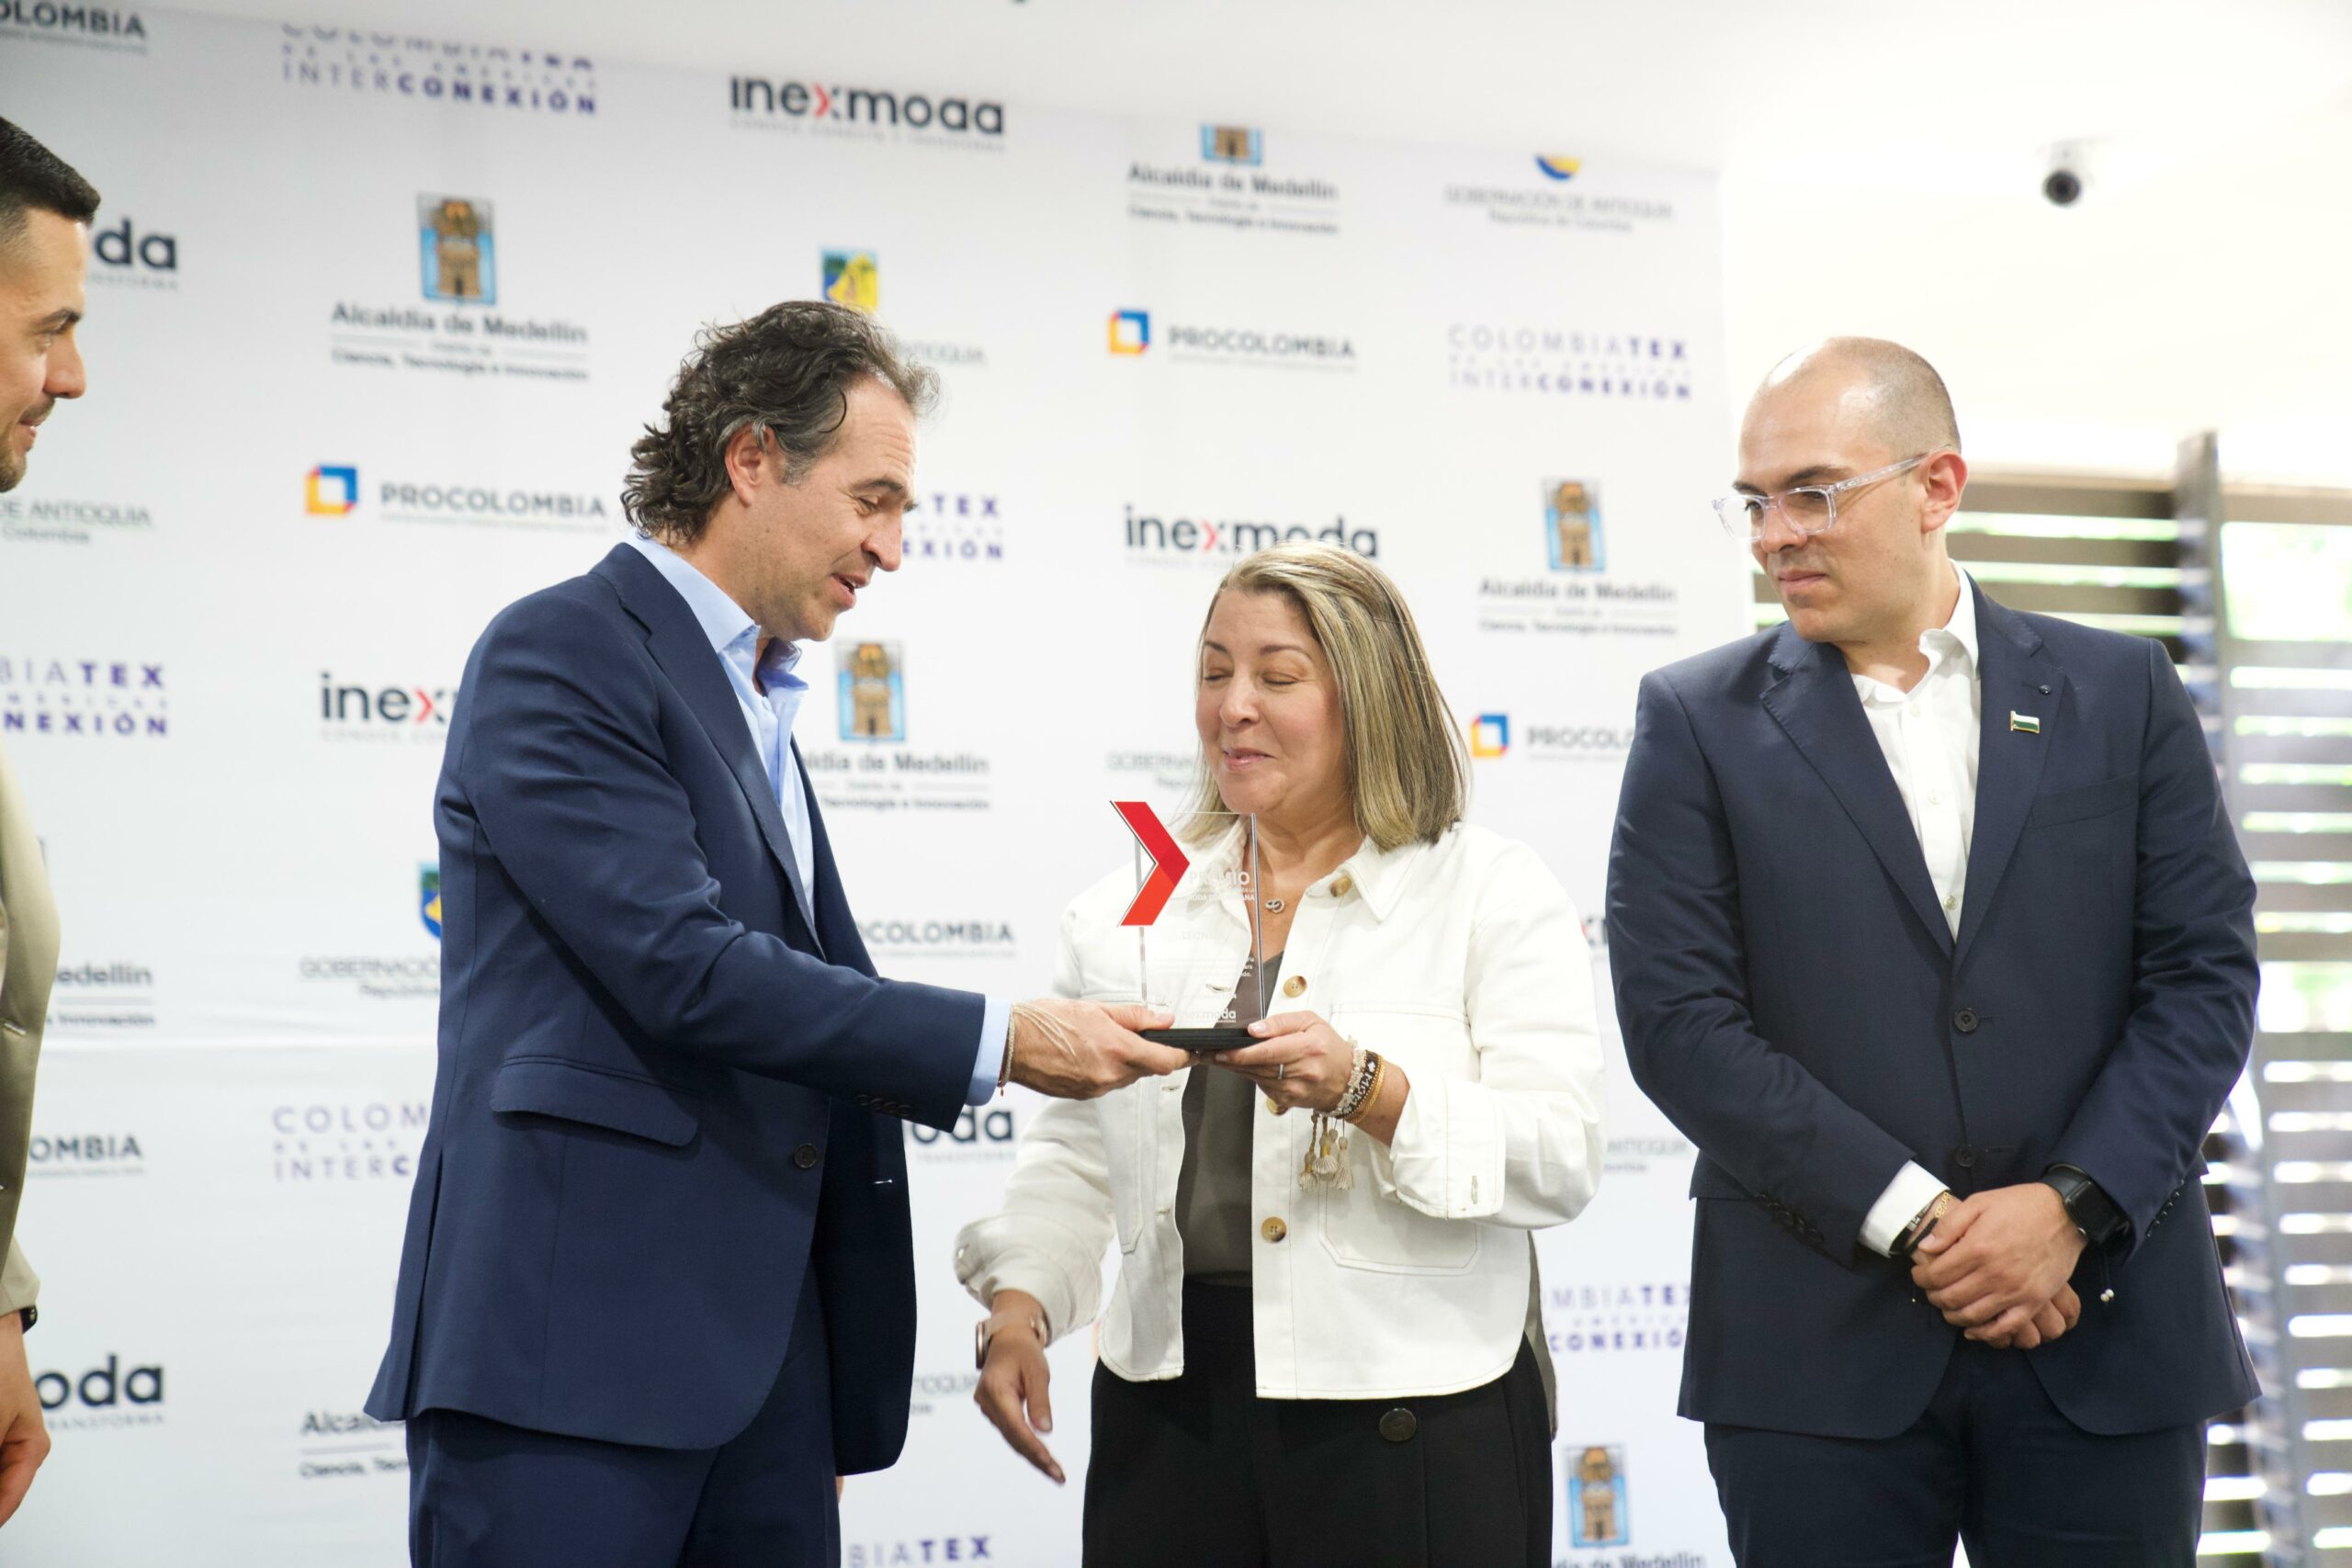 En Colombiatex de las Américas, la Alcaldía de Medellín invita a un trabajo articulado y a recuperar la relación empresa-Estado